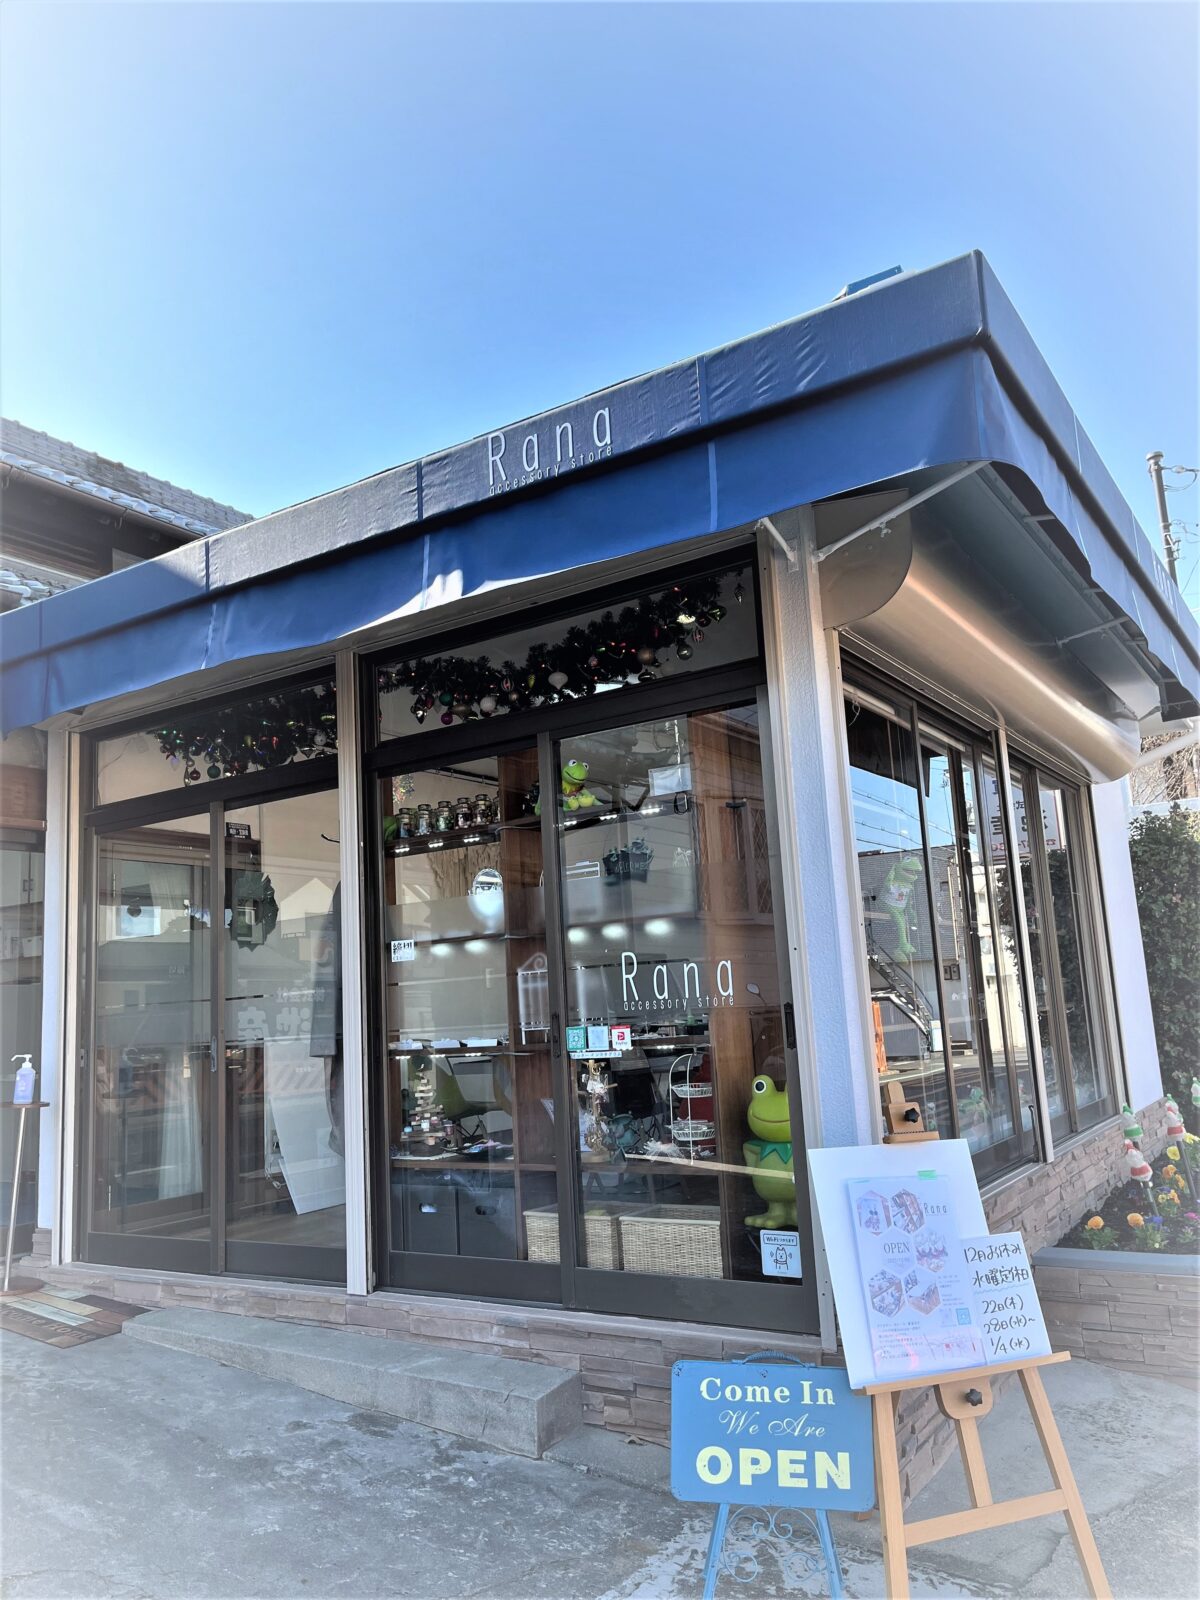 【祝リニューアルオープン】堺市東区大美野にかわいいアクセサリー・雑貨販売のお店がリニューアルオープンしているよ♪@accessory store Rana：